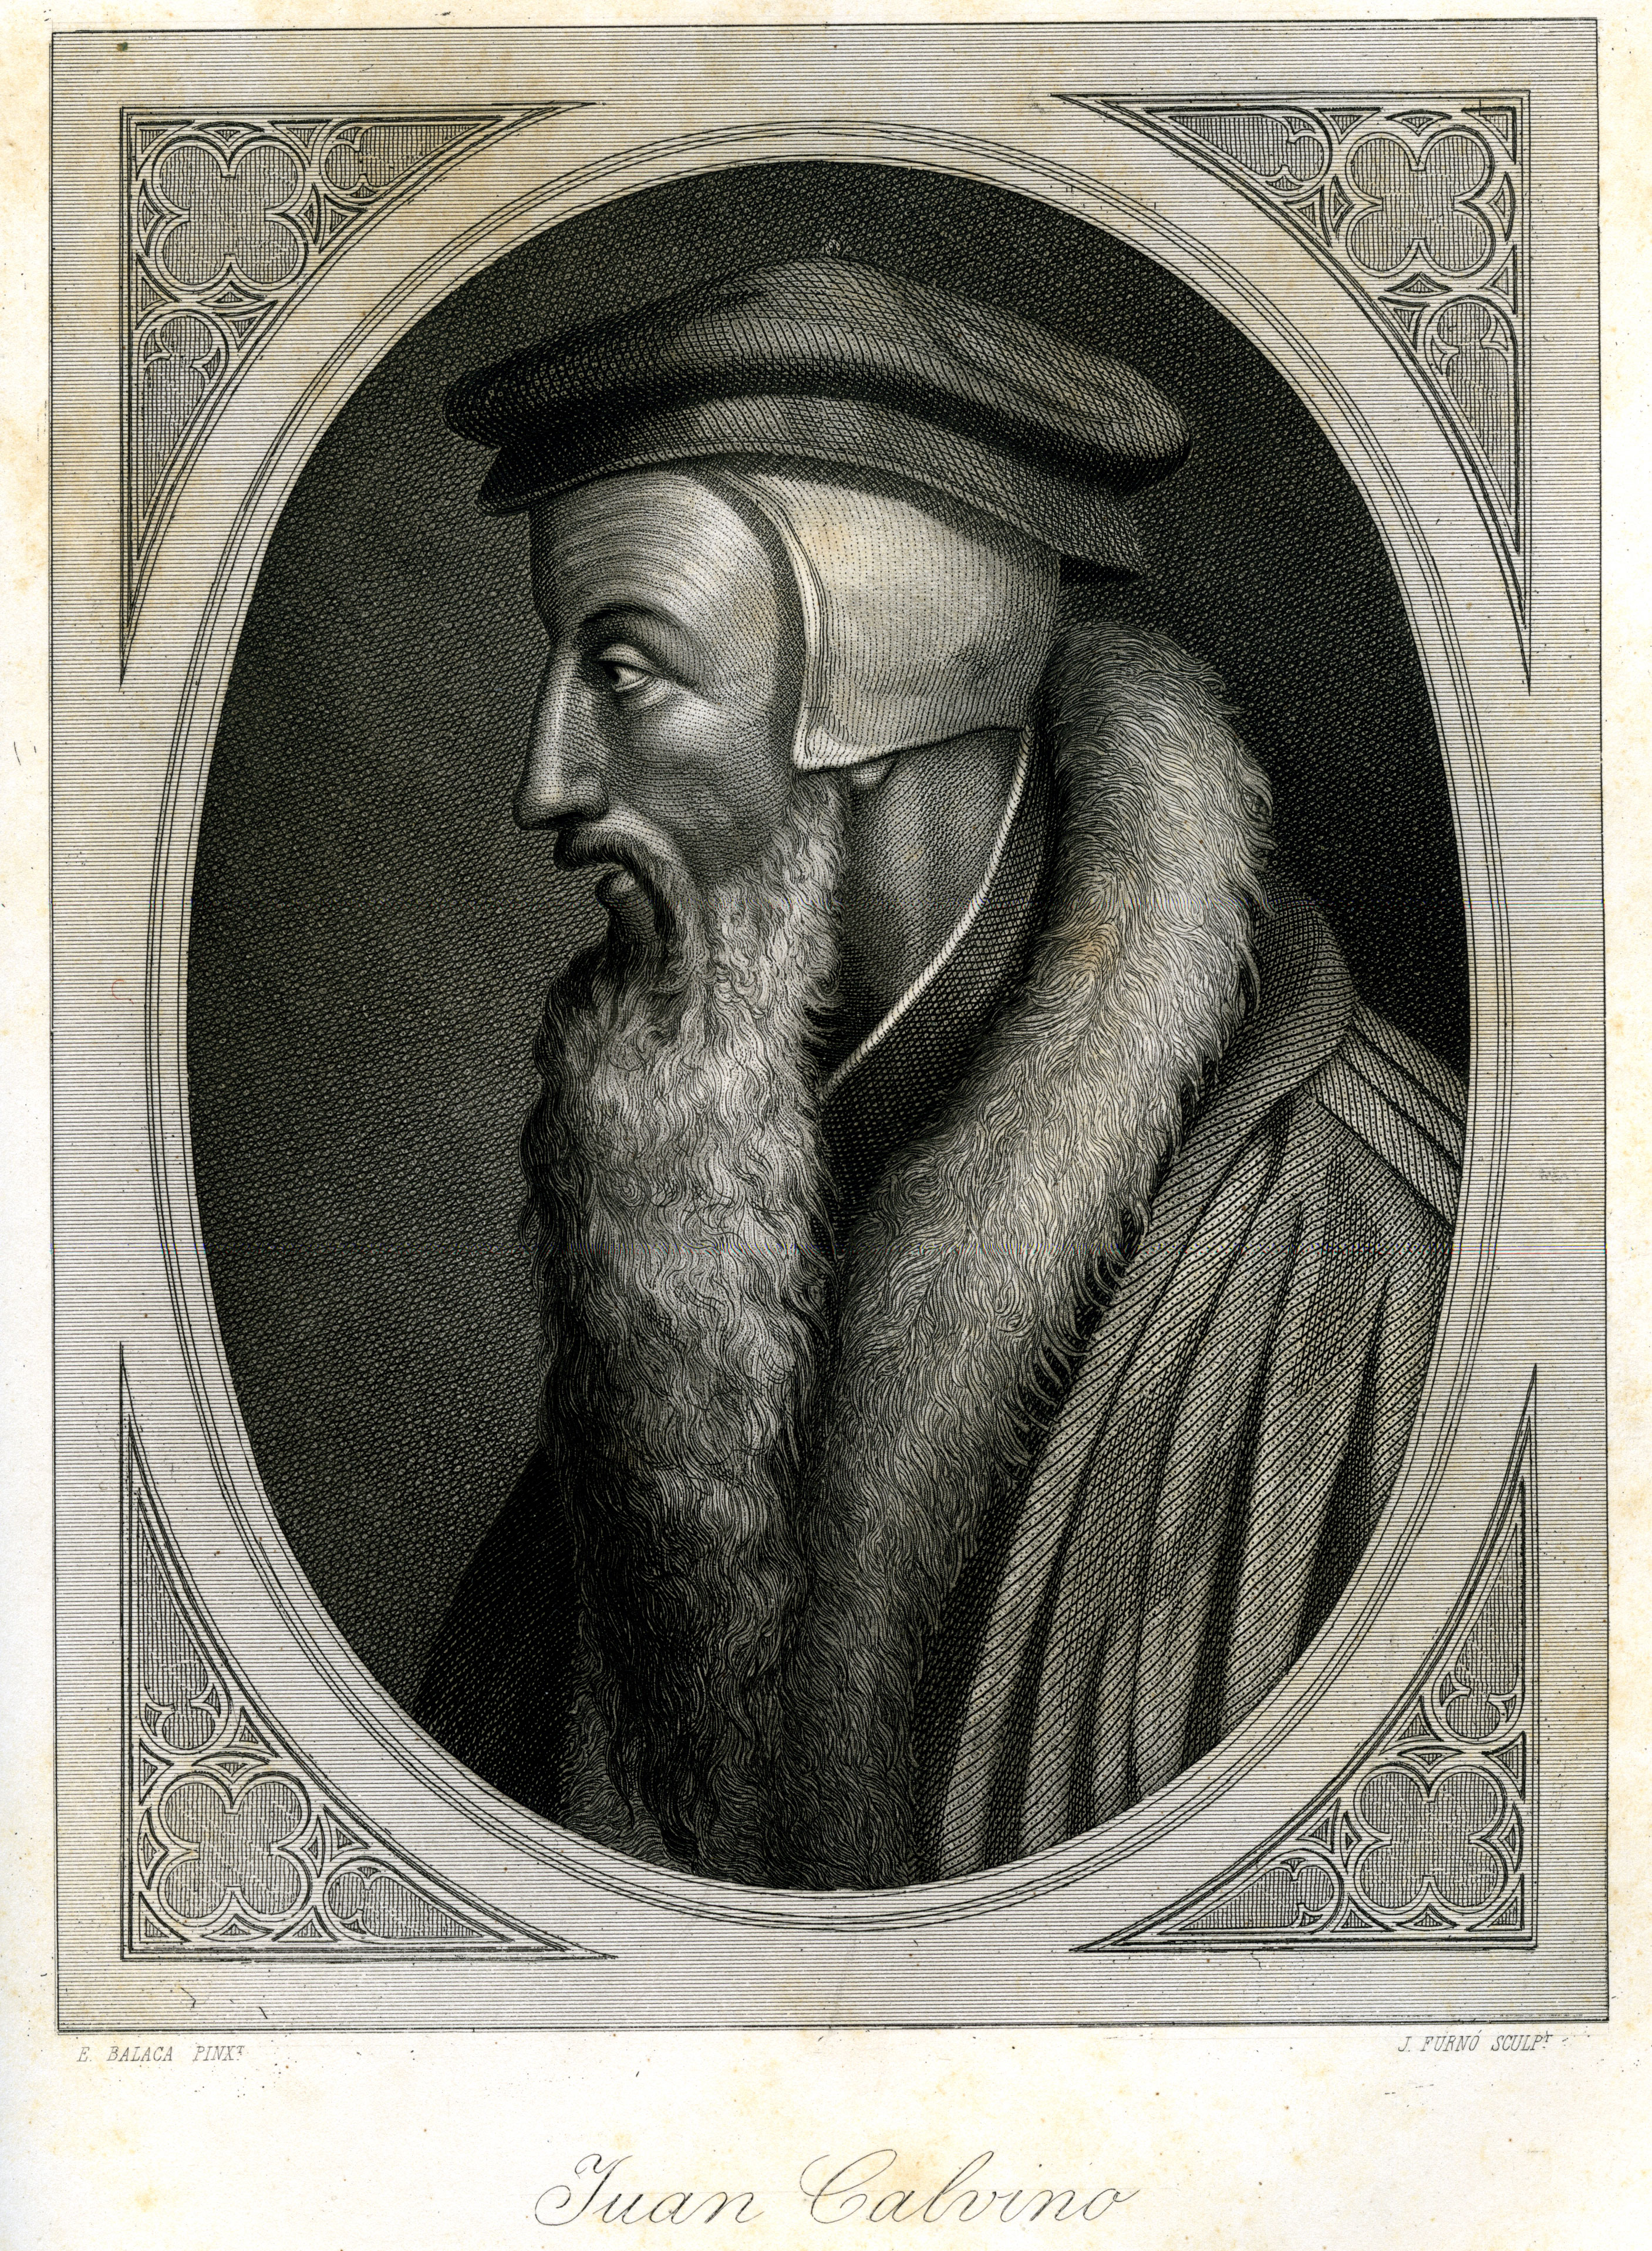 Juan Calvino (1509 - 1564)